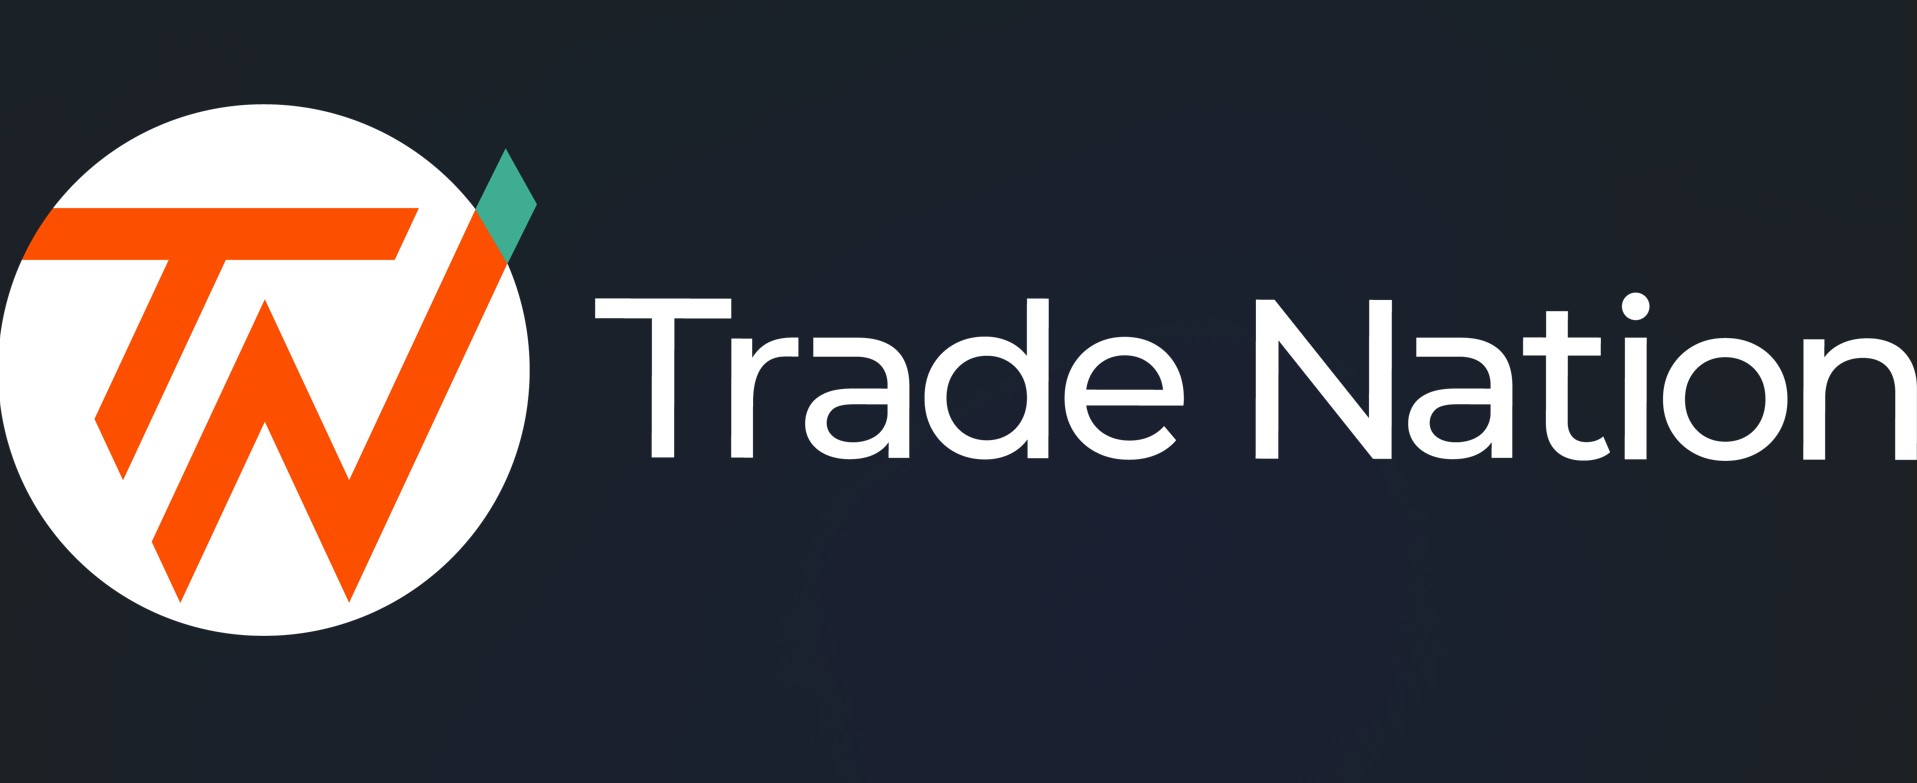 حصول Trade Nation على ترخيص في سيشيل واستهدافها لـ السوق الآسيوية